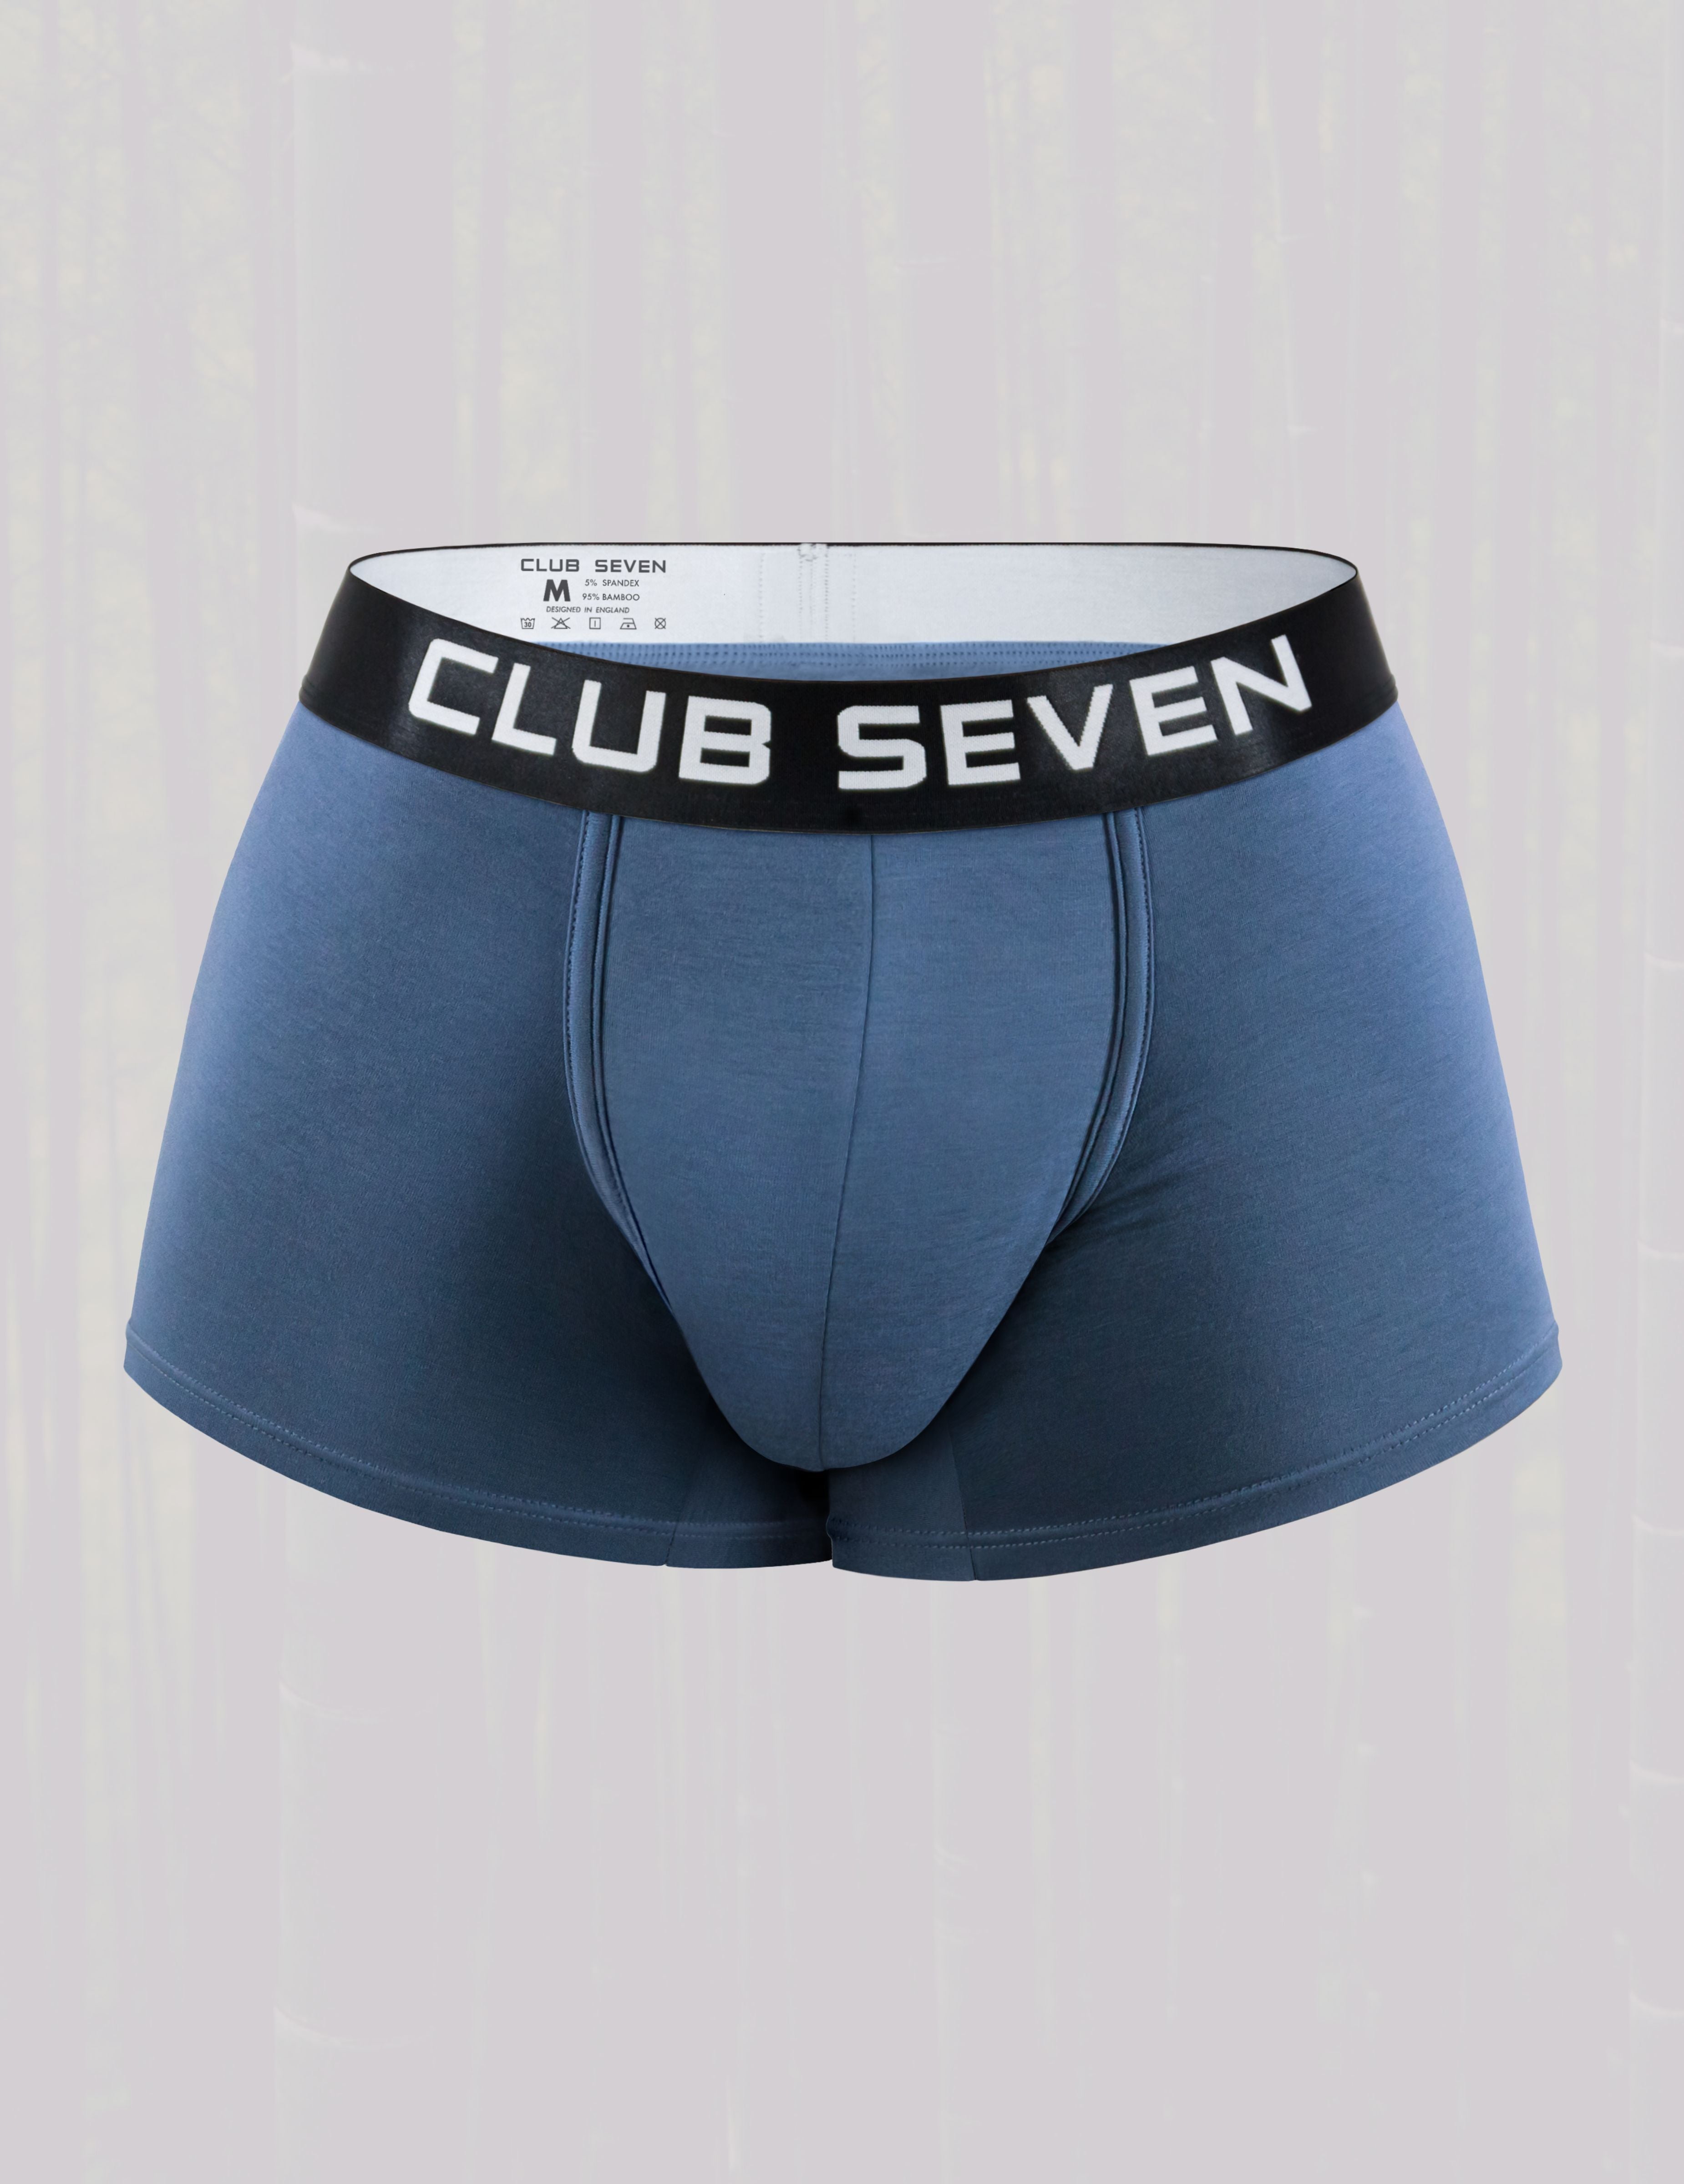 bamboo underwear for men, Men bamboo underwear, brief of man, just wear briefs, mens bulge, gayest underwear men&#39;s briefs.